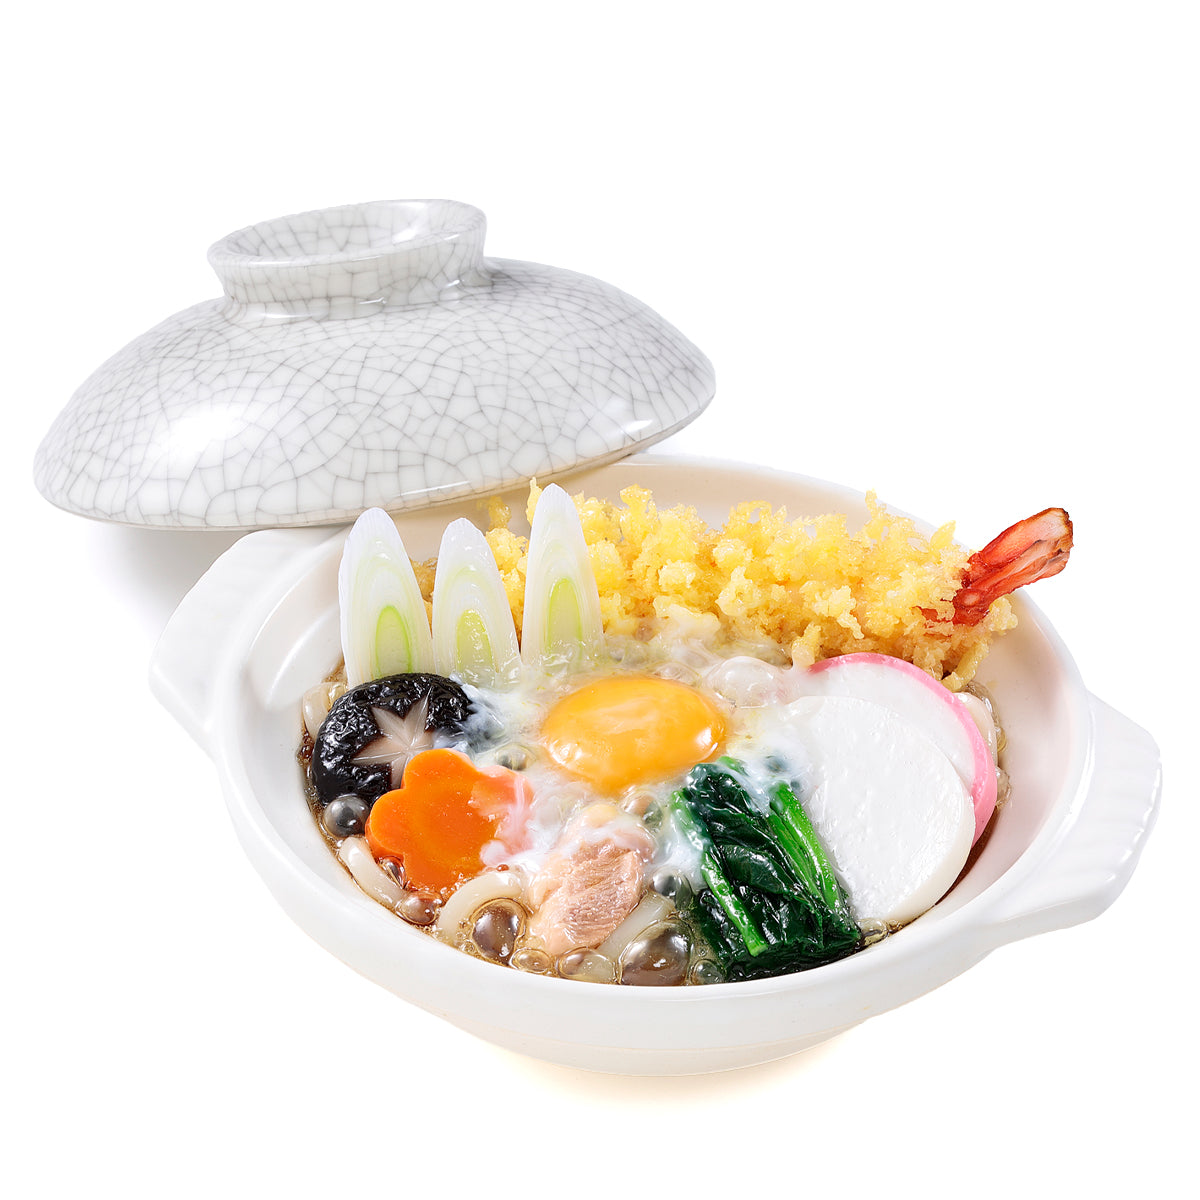 オリジナル食品サンプル「鍋焼きうどん」の商品画像です。(英語表記) Udon Noodle Hot Pot